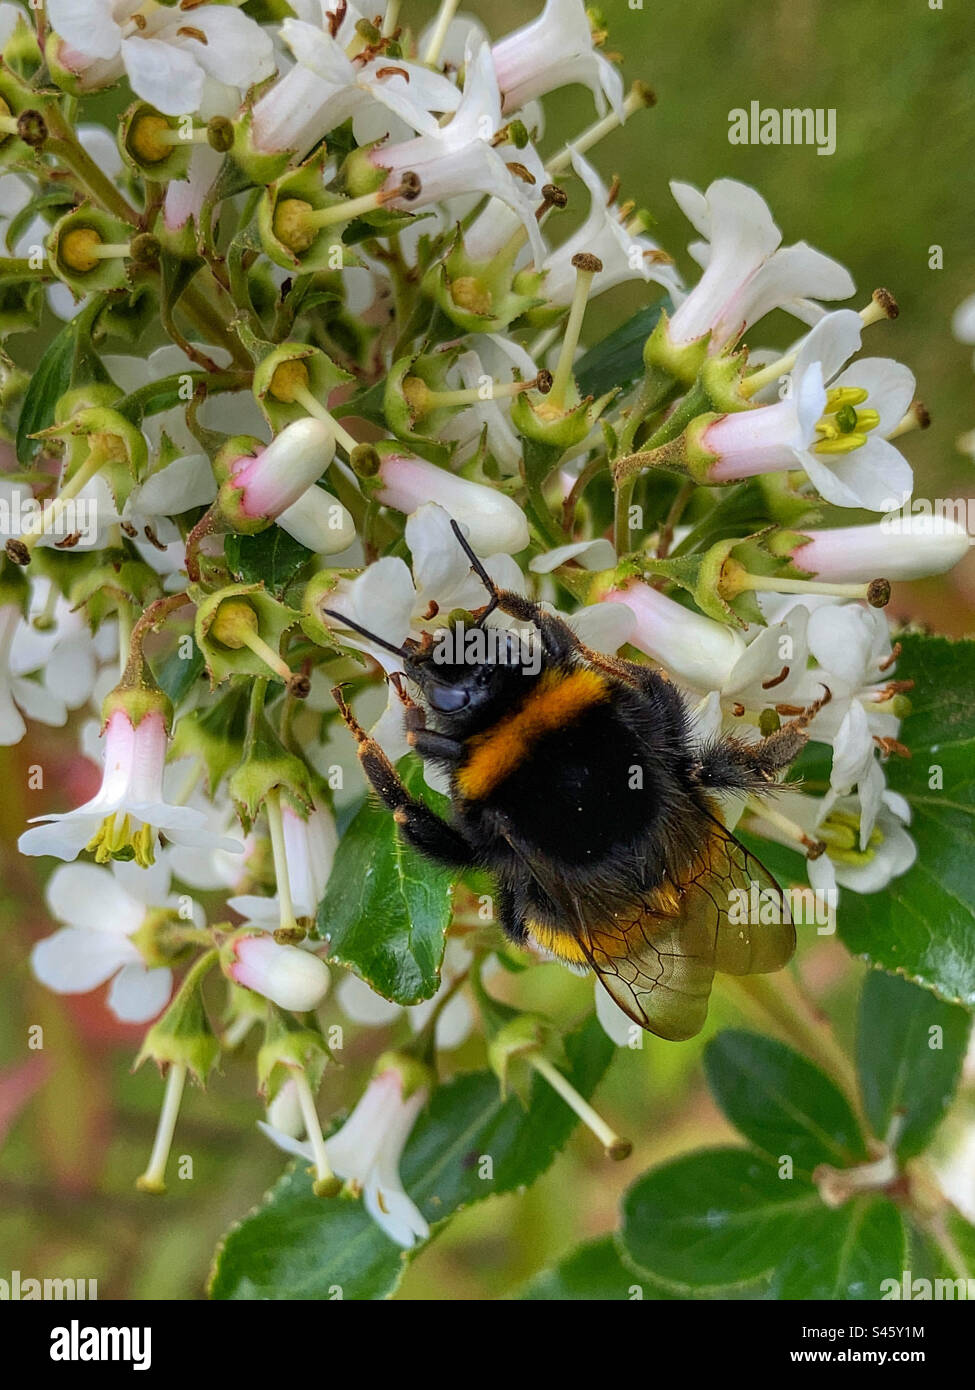 Bee on a White Escallonia flower Stock Photo